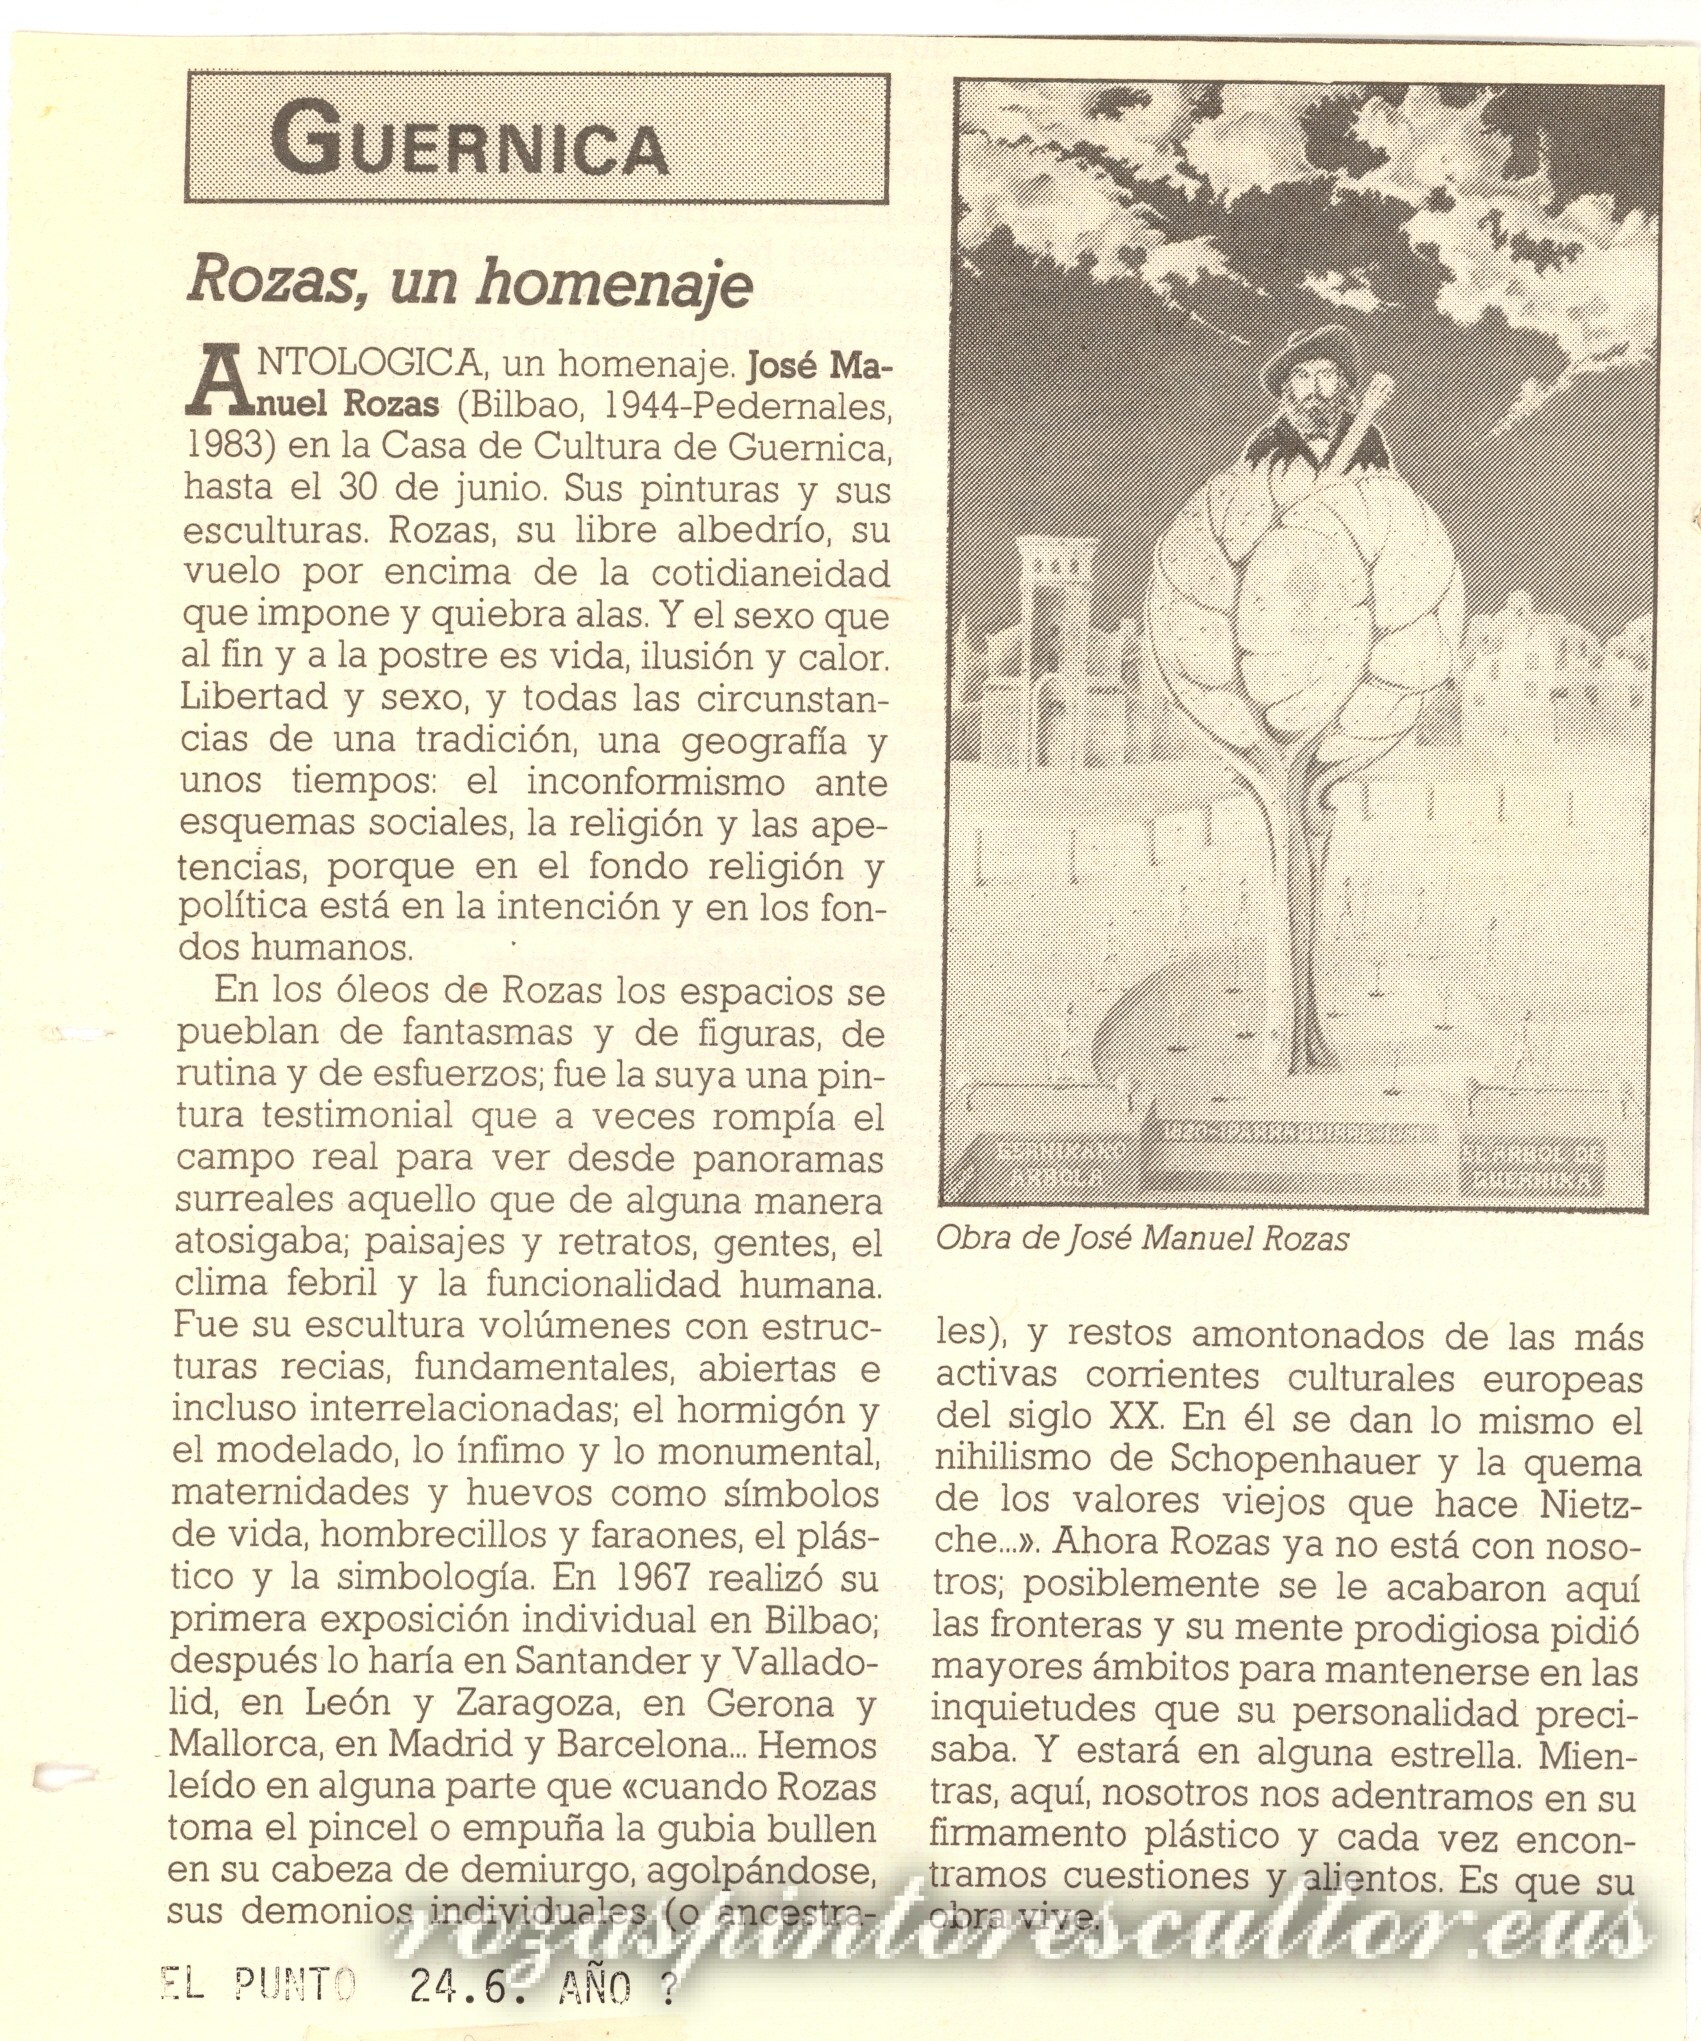 1988 El Punto – Rozas, a tribute